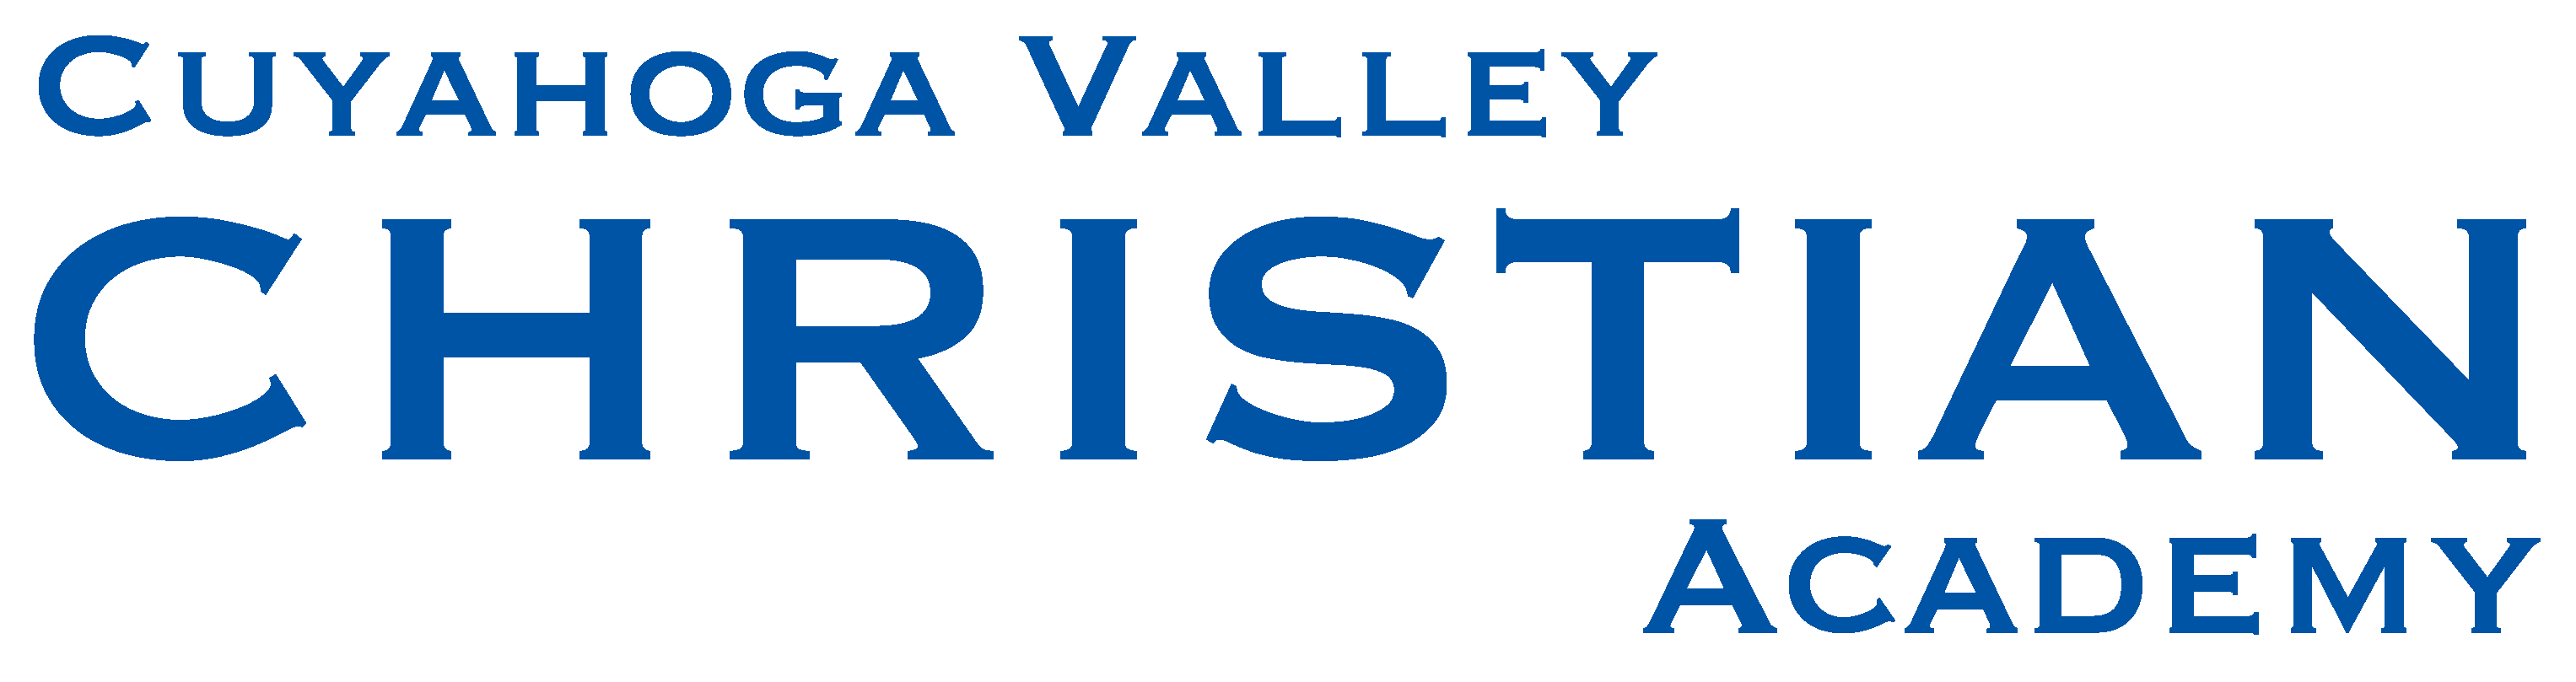 CVCA logo